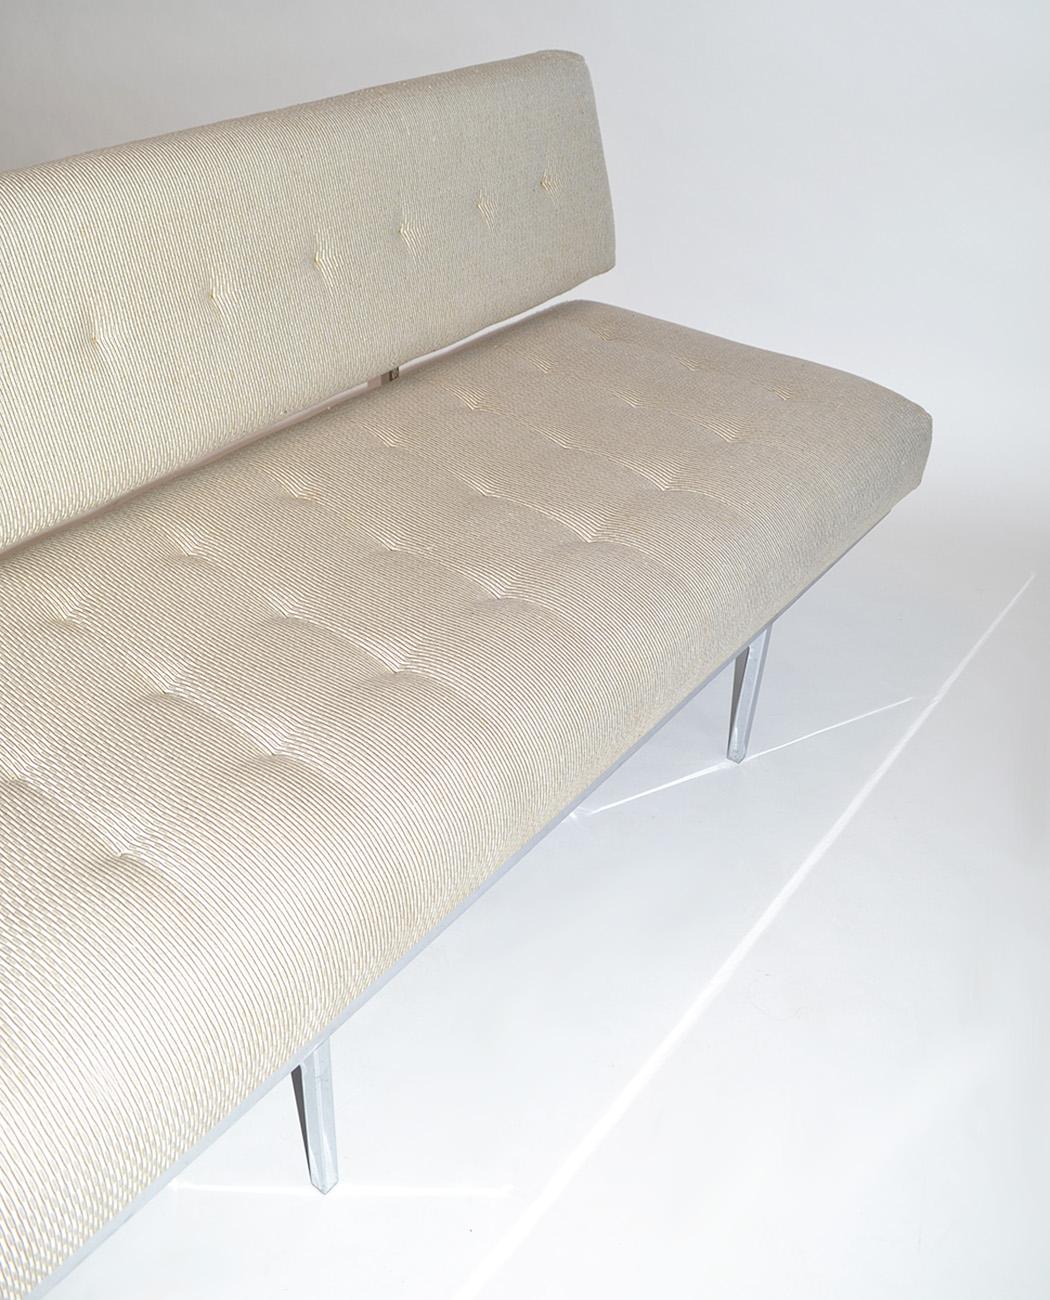 tubular chrome frame terracotta fabric sarah sofa